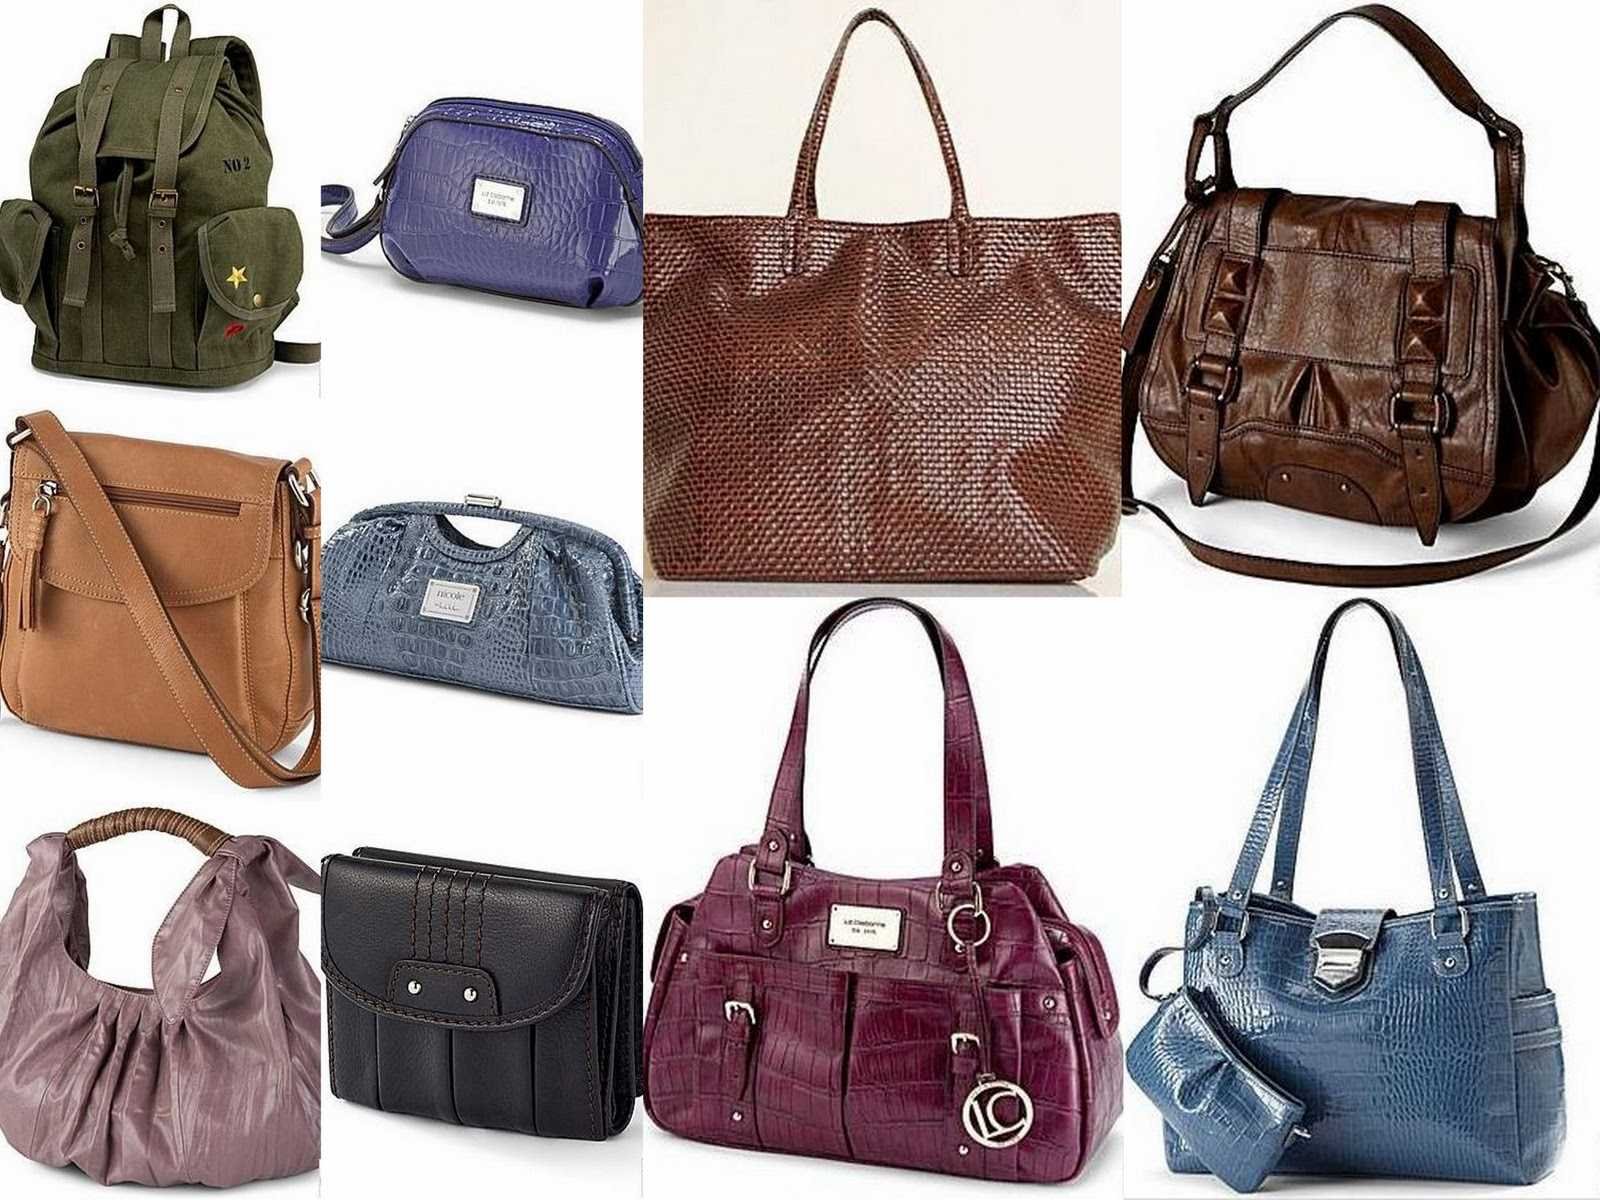 Название моделей сумок. Сумка женская. Разные сумки. Формы сумок женских. Формы дамских сумок.